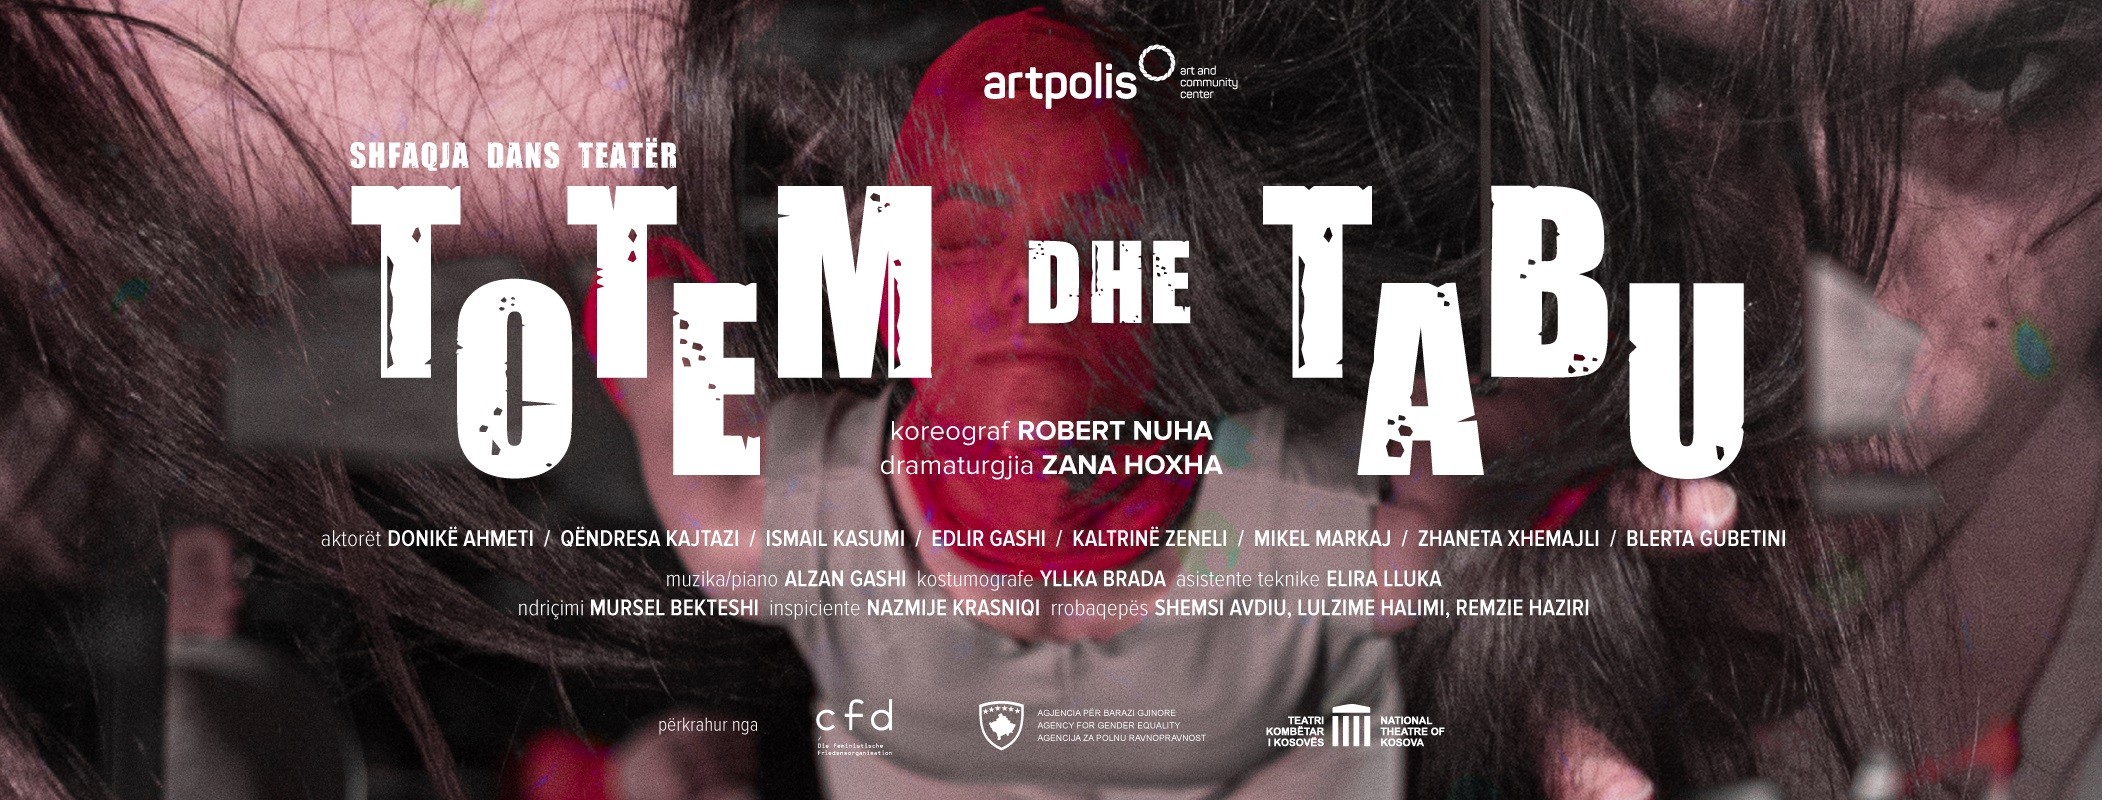 Artpolis prezanton sot premierën e shfaqjes dans teatër “Totem dhe Tabu”